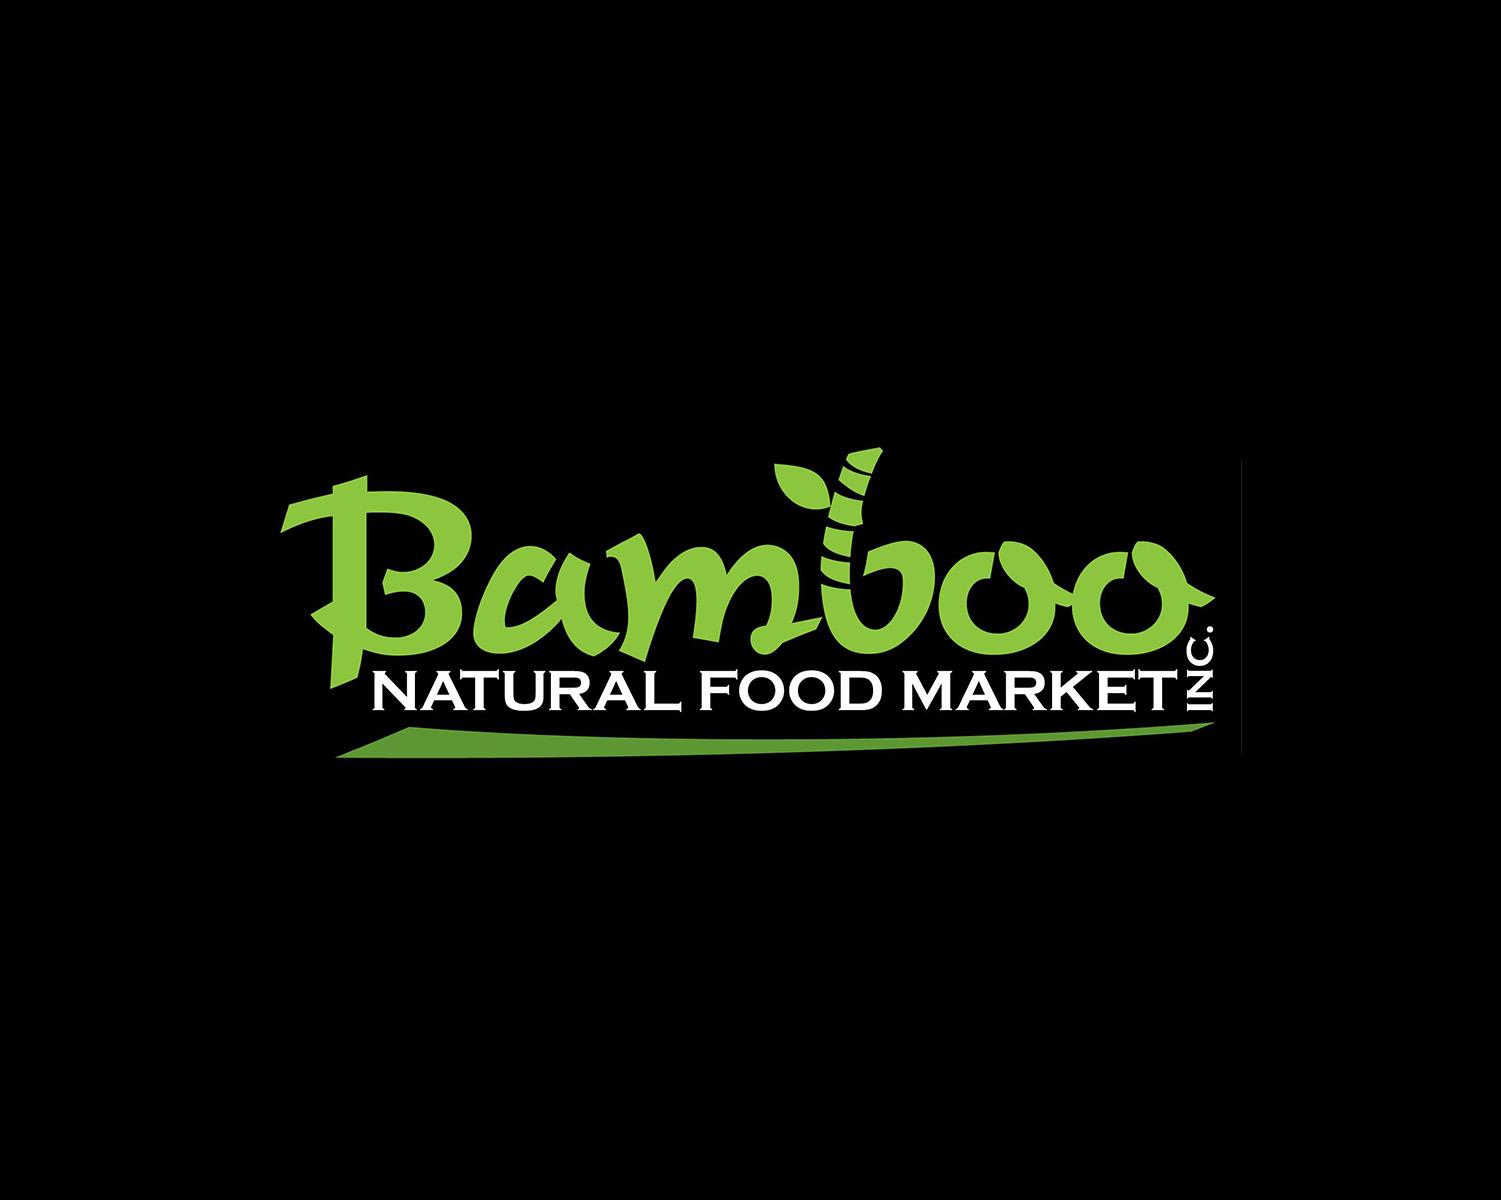 Bamboo Natural Food Market logo